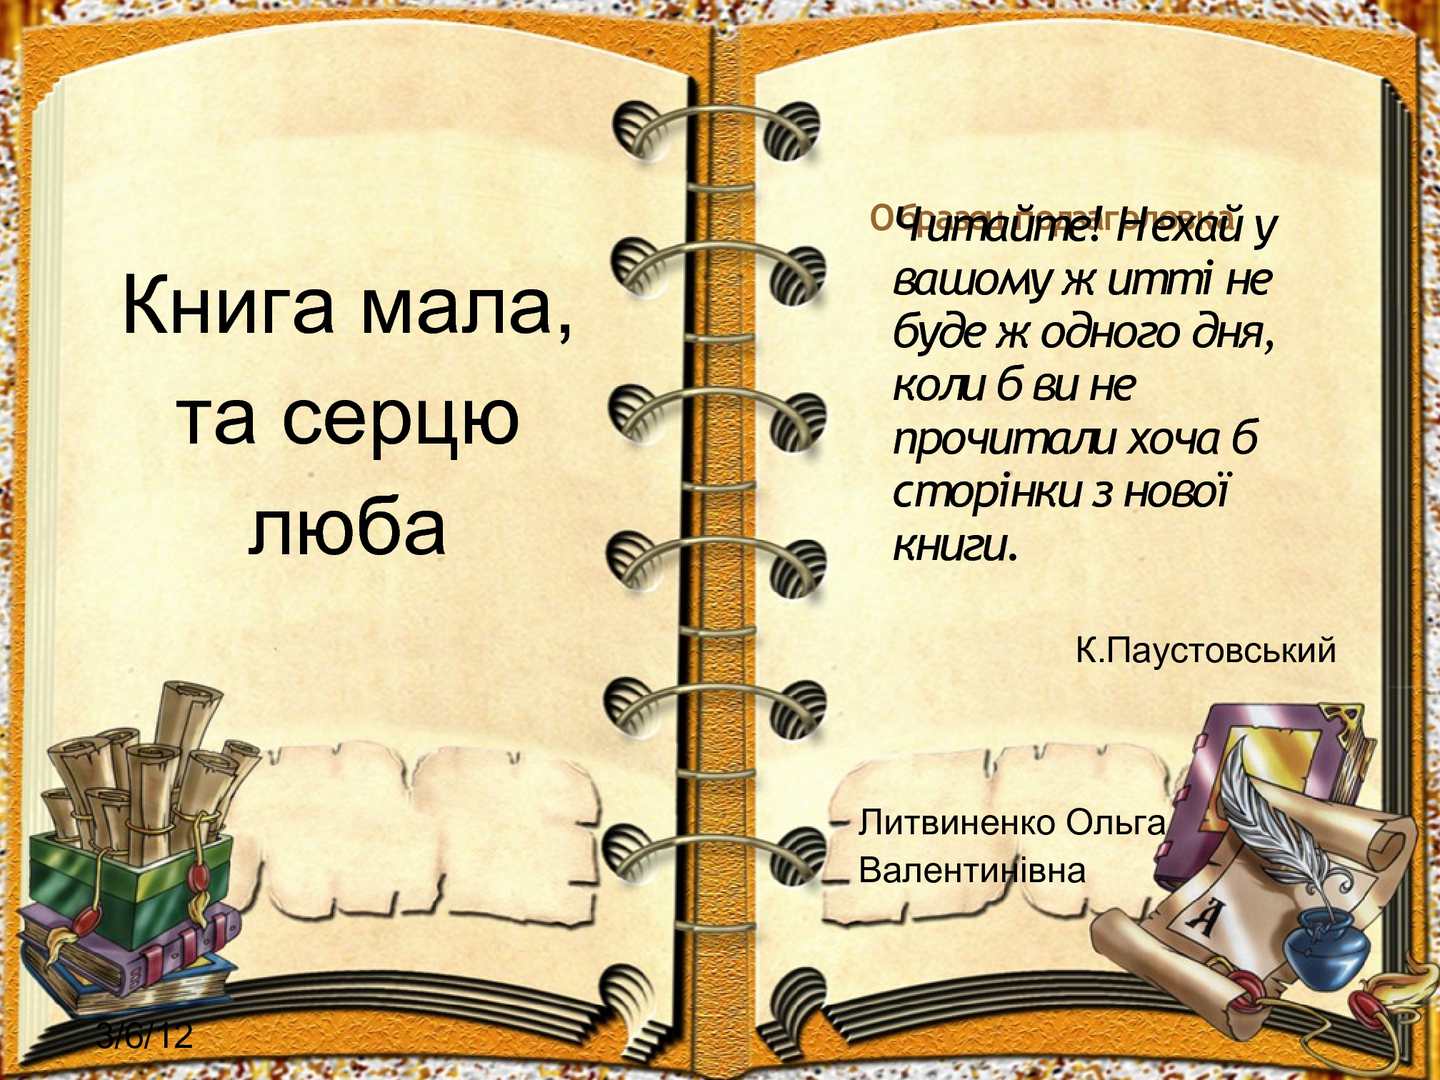 Цитаты о русском языке